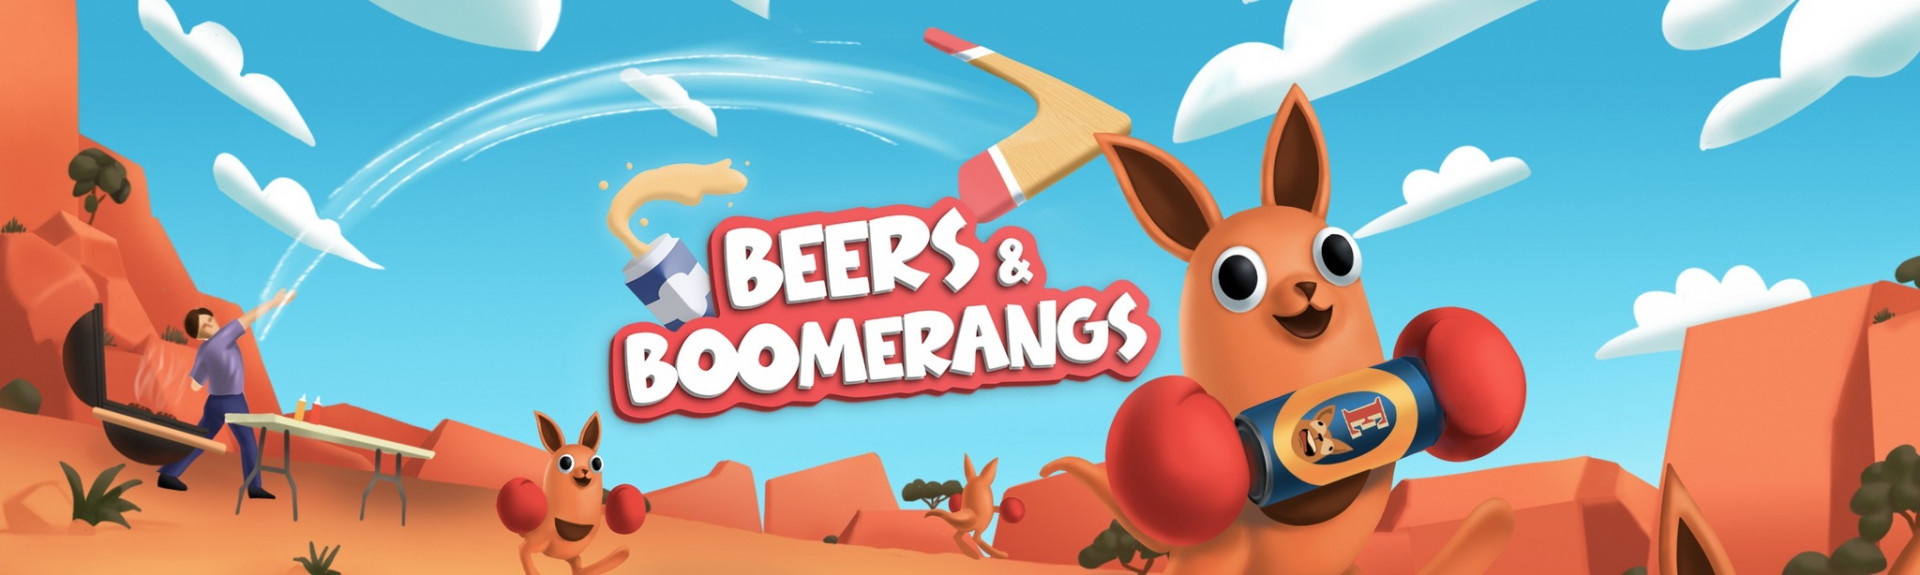 Beers & Boomerangs